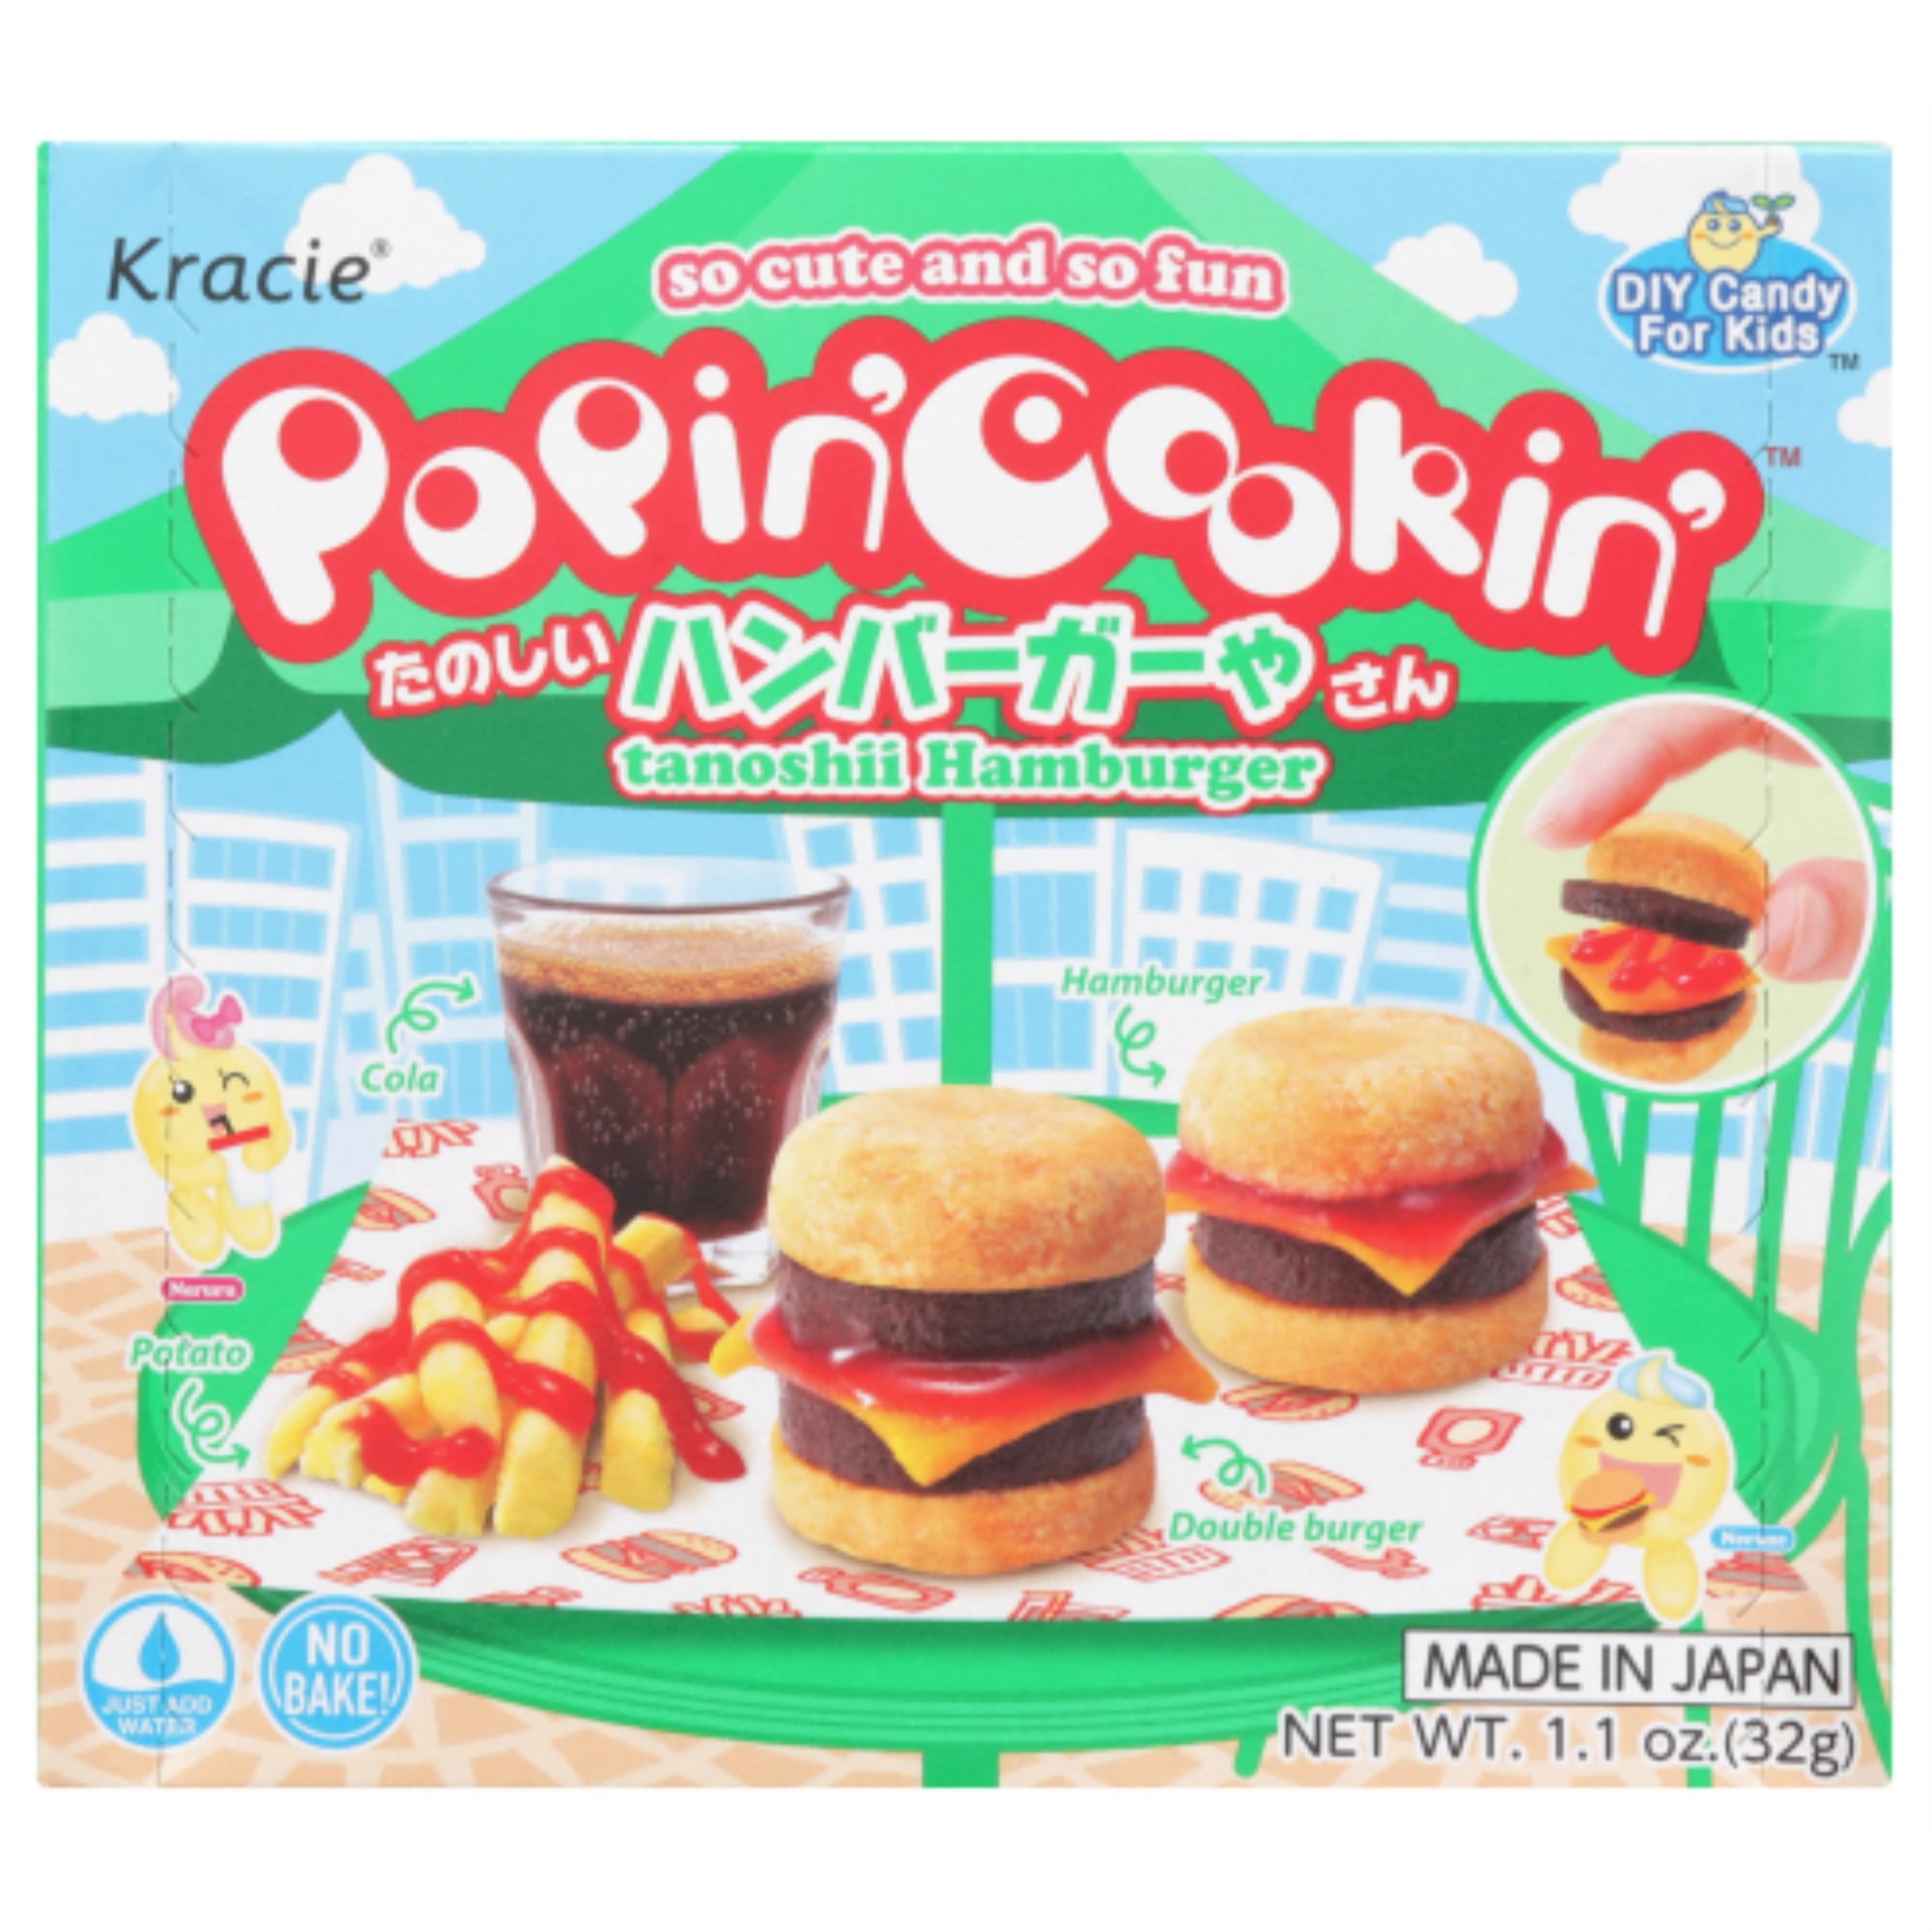  Popin' Cookin Diy Candy Kit (8 Pack Varieties